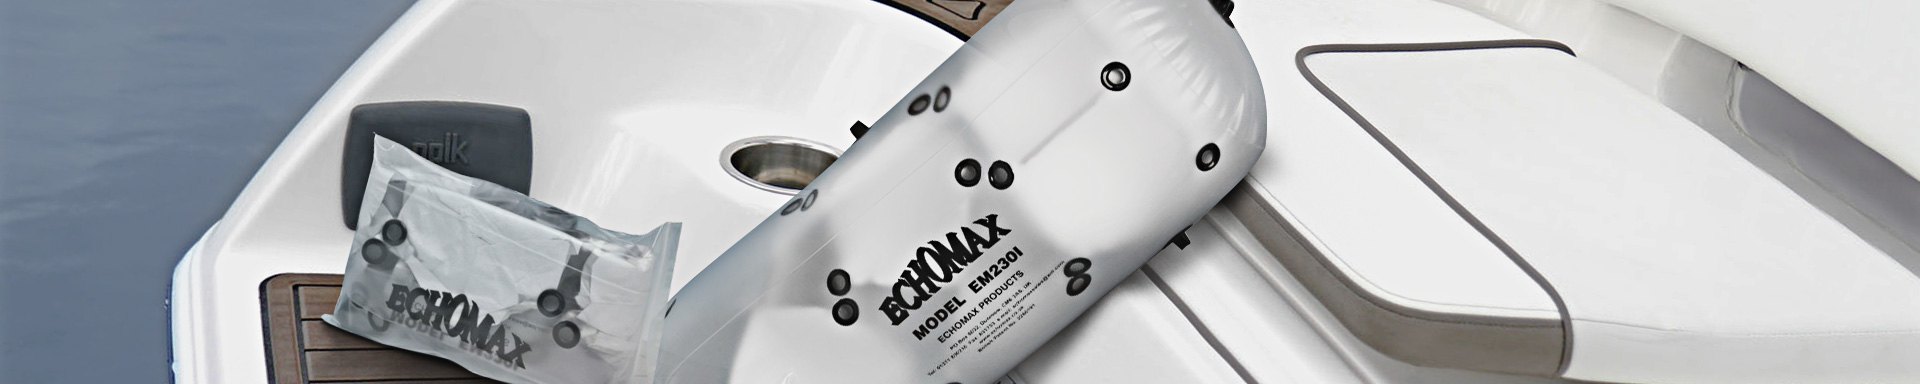 Echomax Life Rafts & Survival Gear